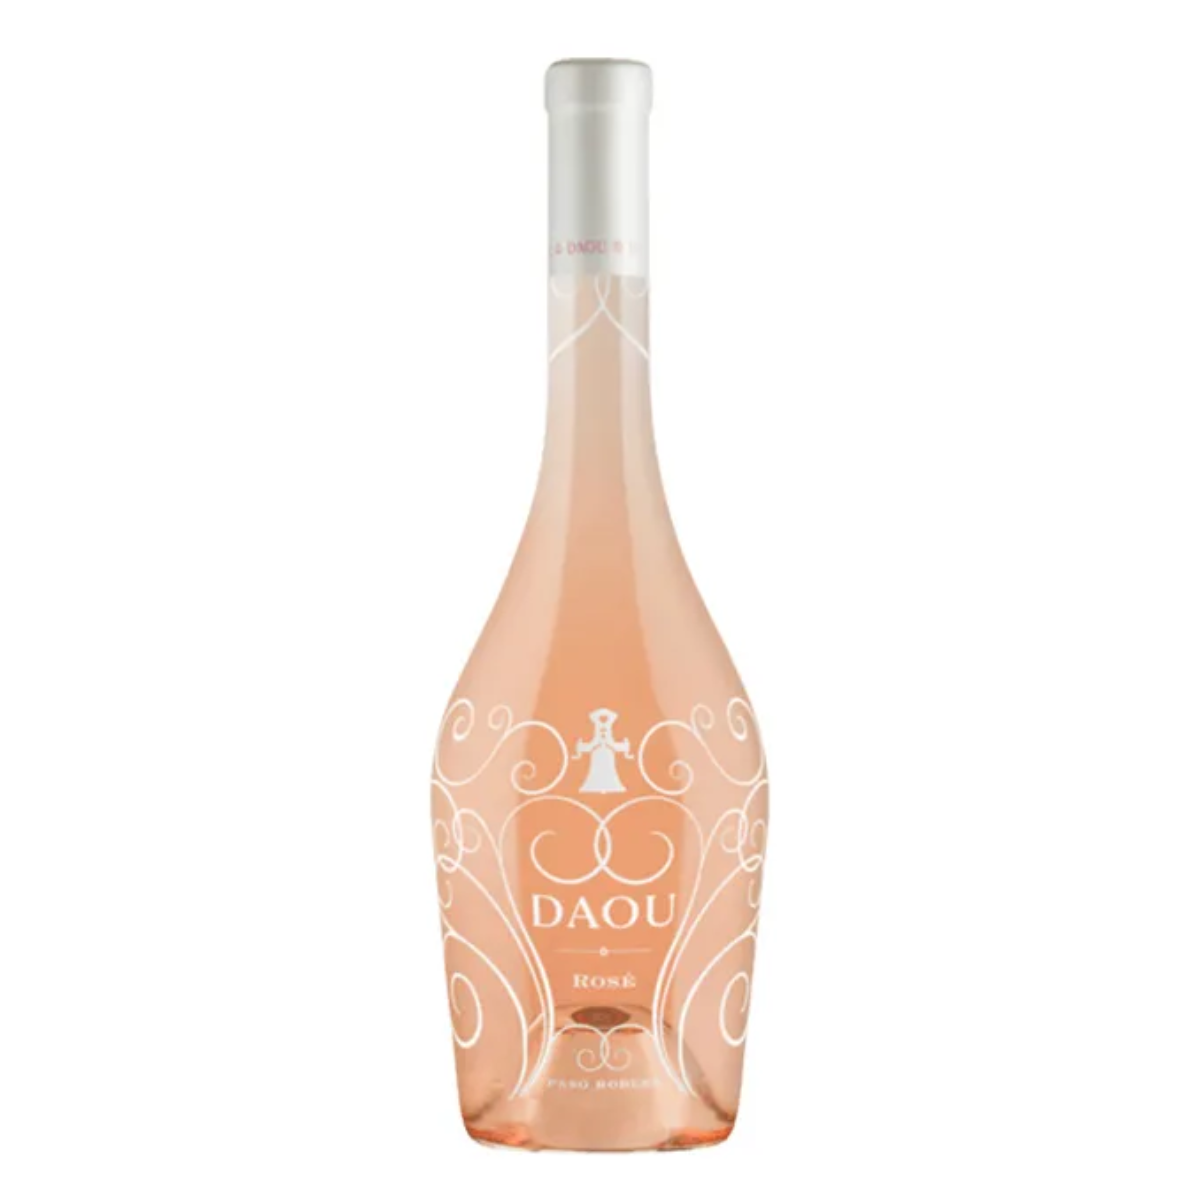 Daou (Pompadour Wine)